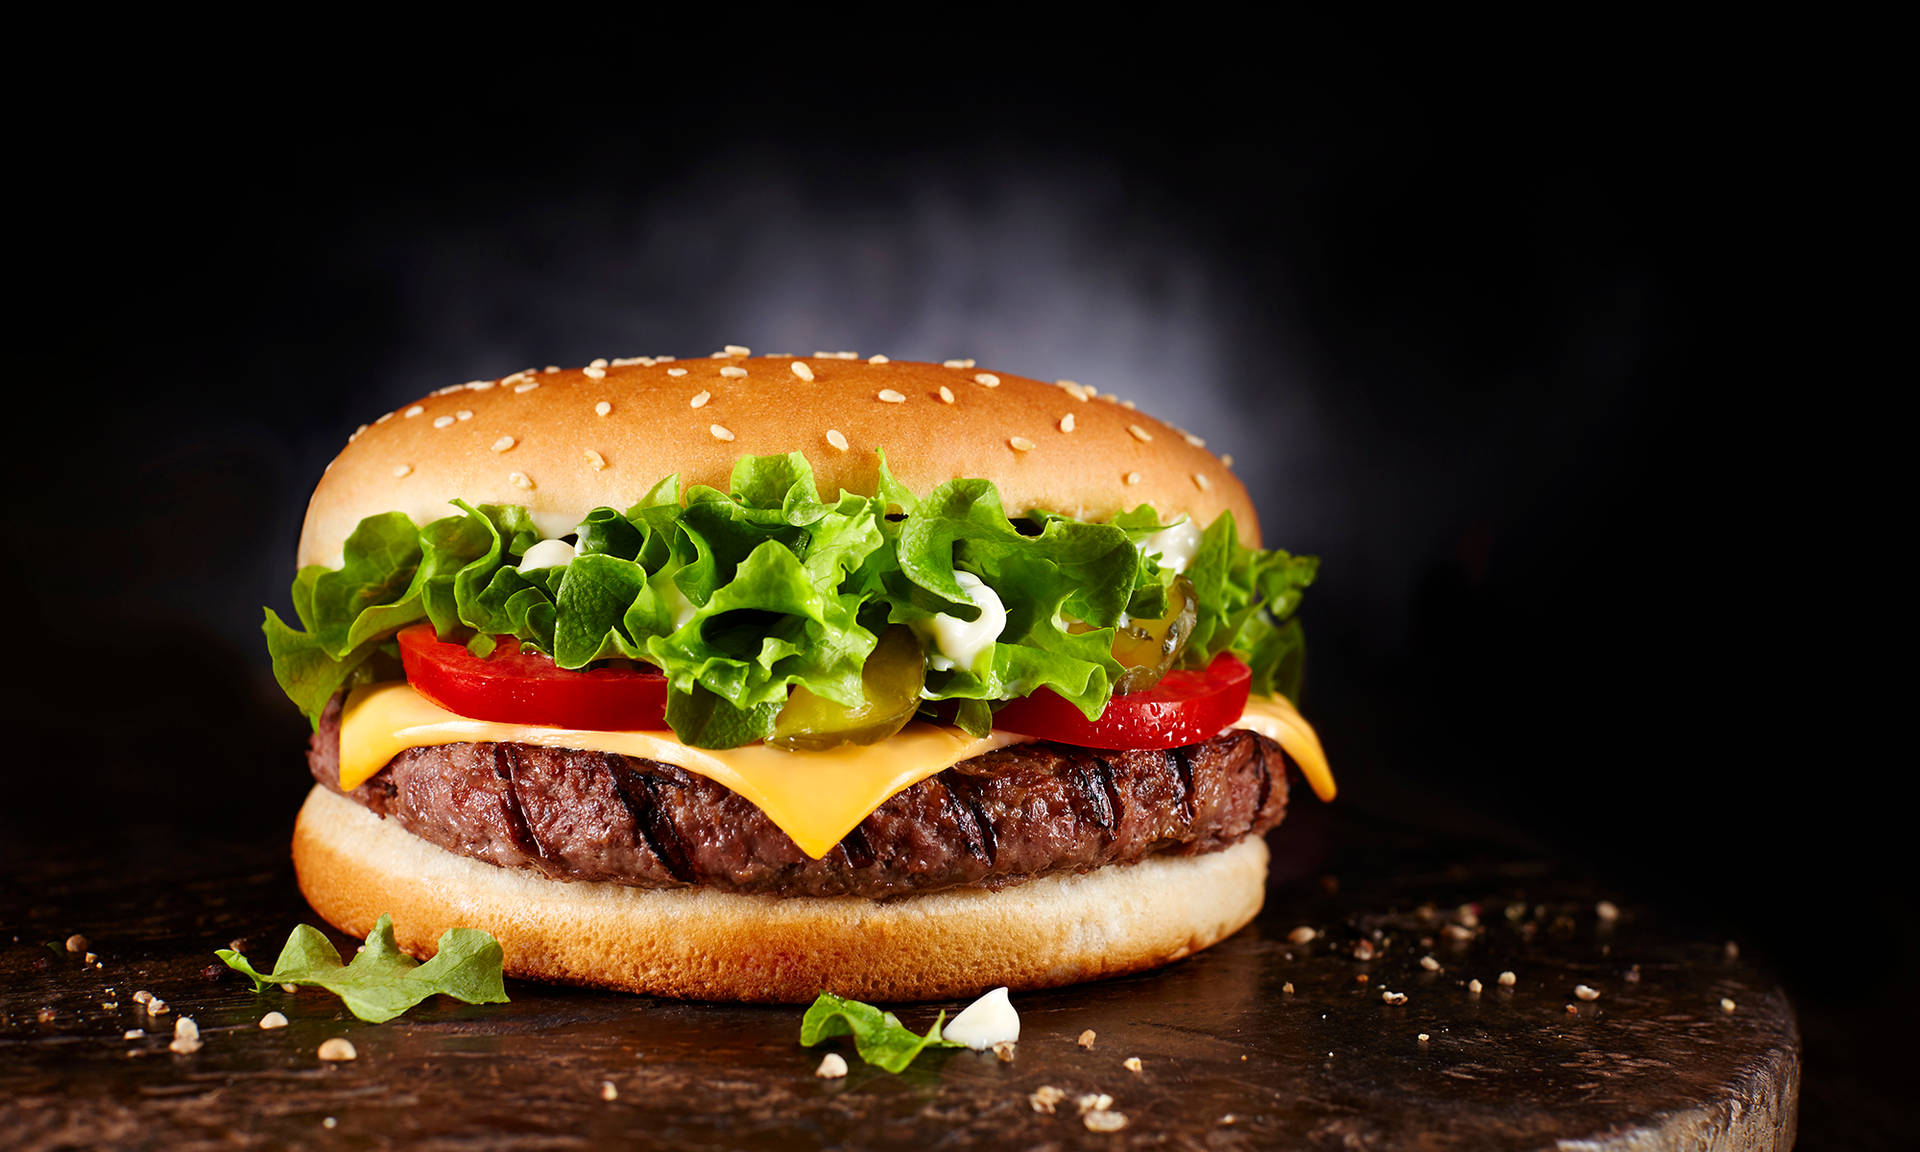 Burger King's Dainty Burger Wallpaper